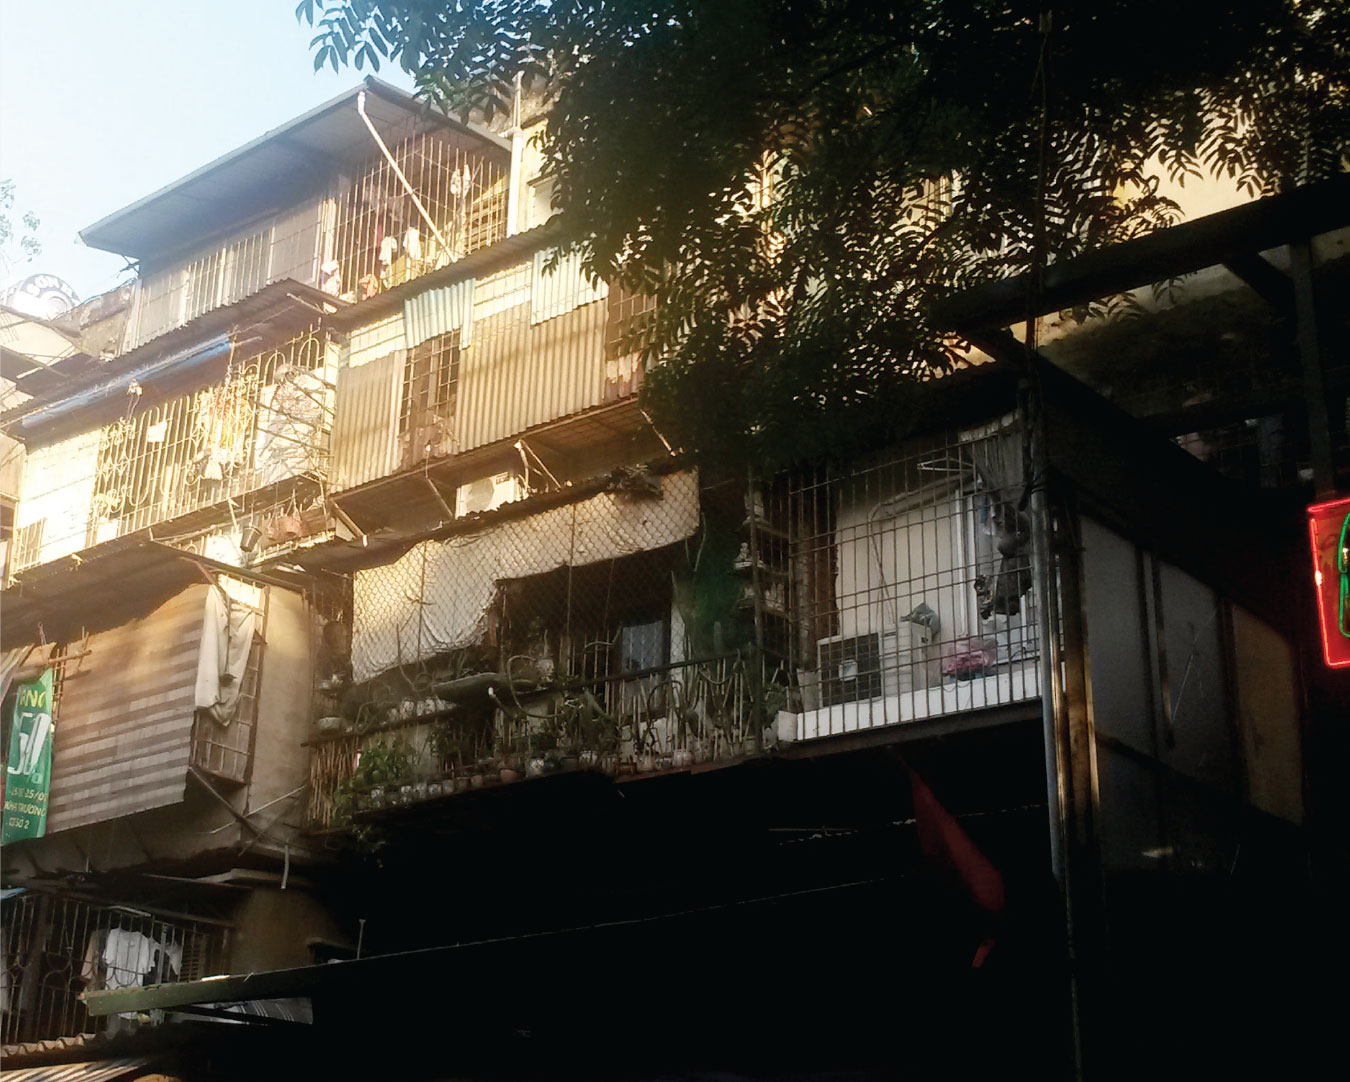 Kế hoạch cải tạo các chung cư cũ của Hà Nội gần như “giậm chân tại chỗ” sau hơn 10 năm triển khai do gặp nhiều vướng mắc. Ảnh: Trọng Tuyến